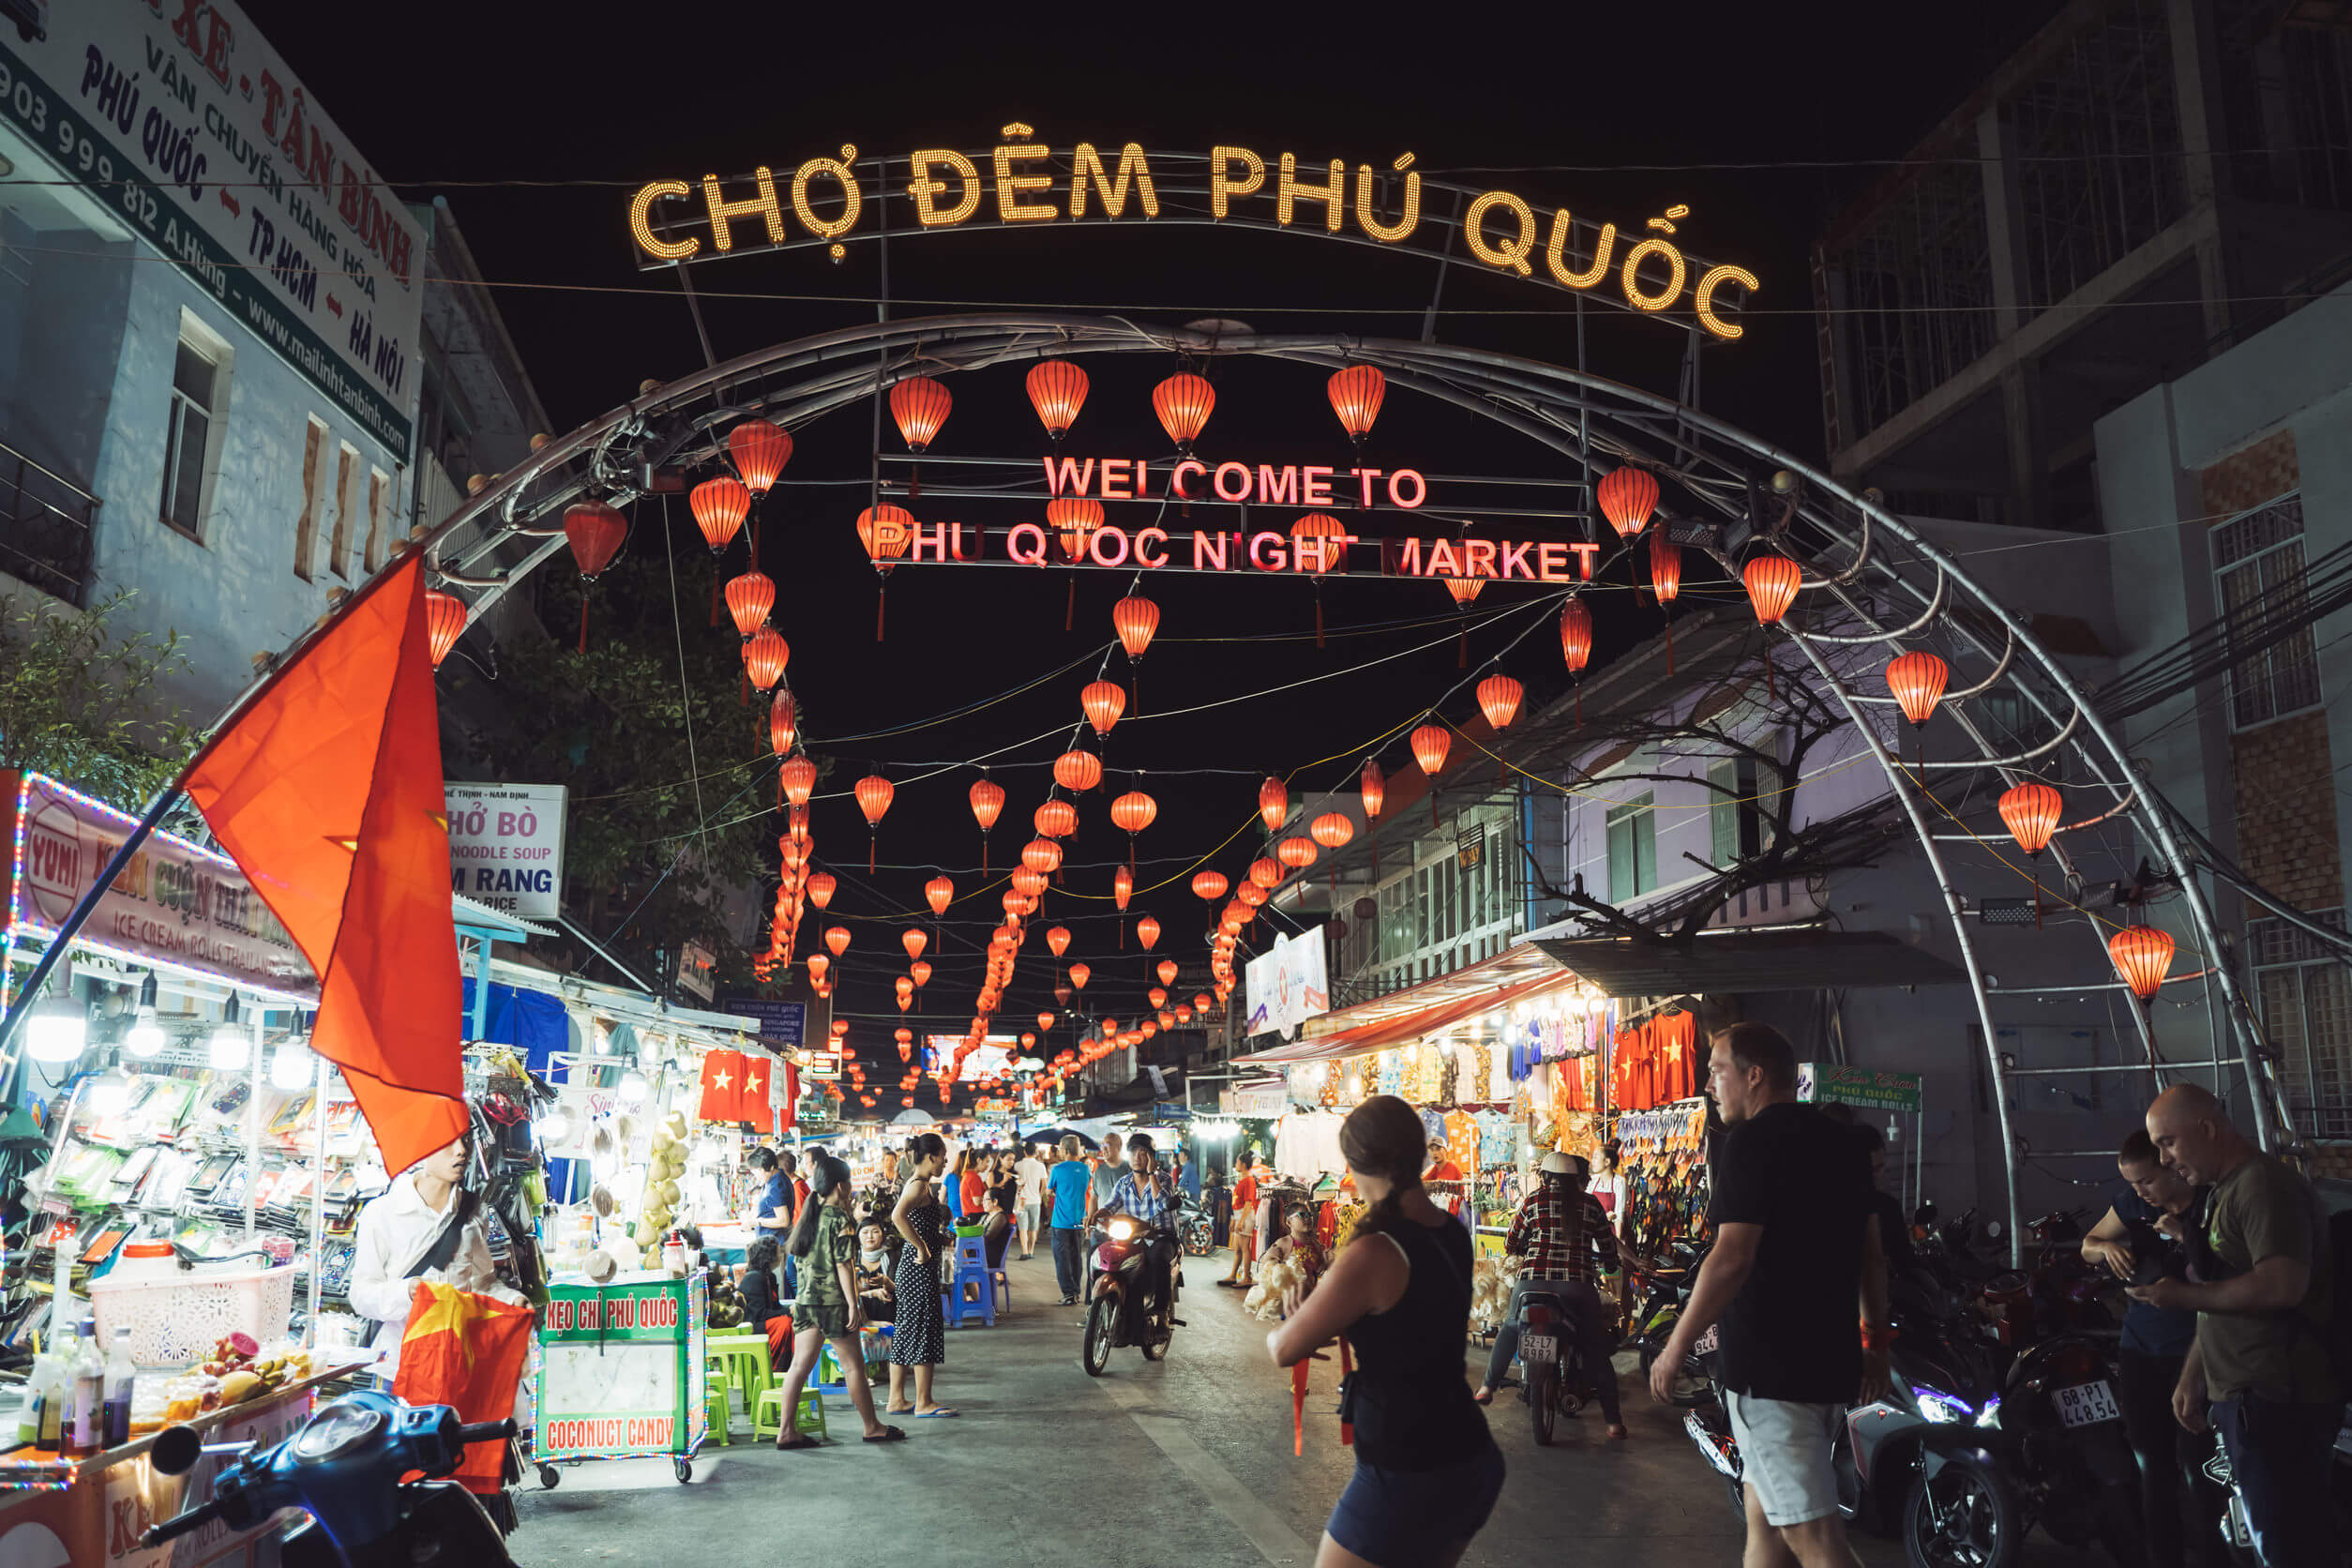 Phu quoc in Vietnam